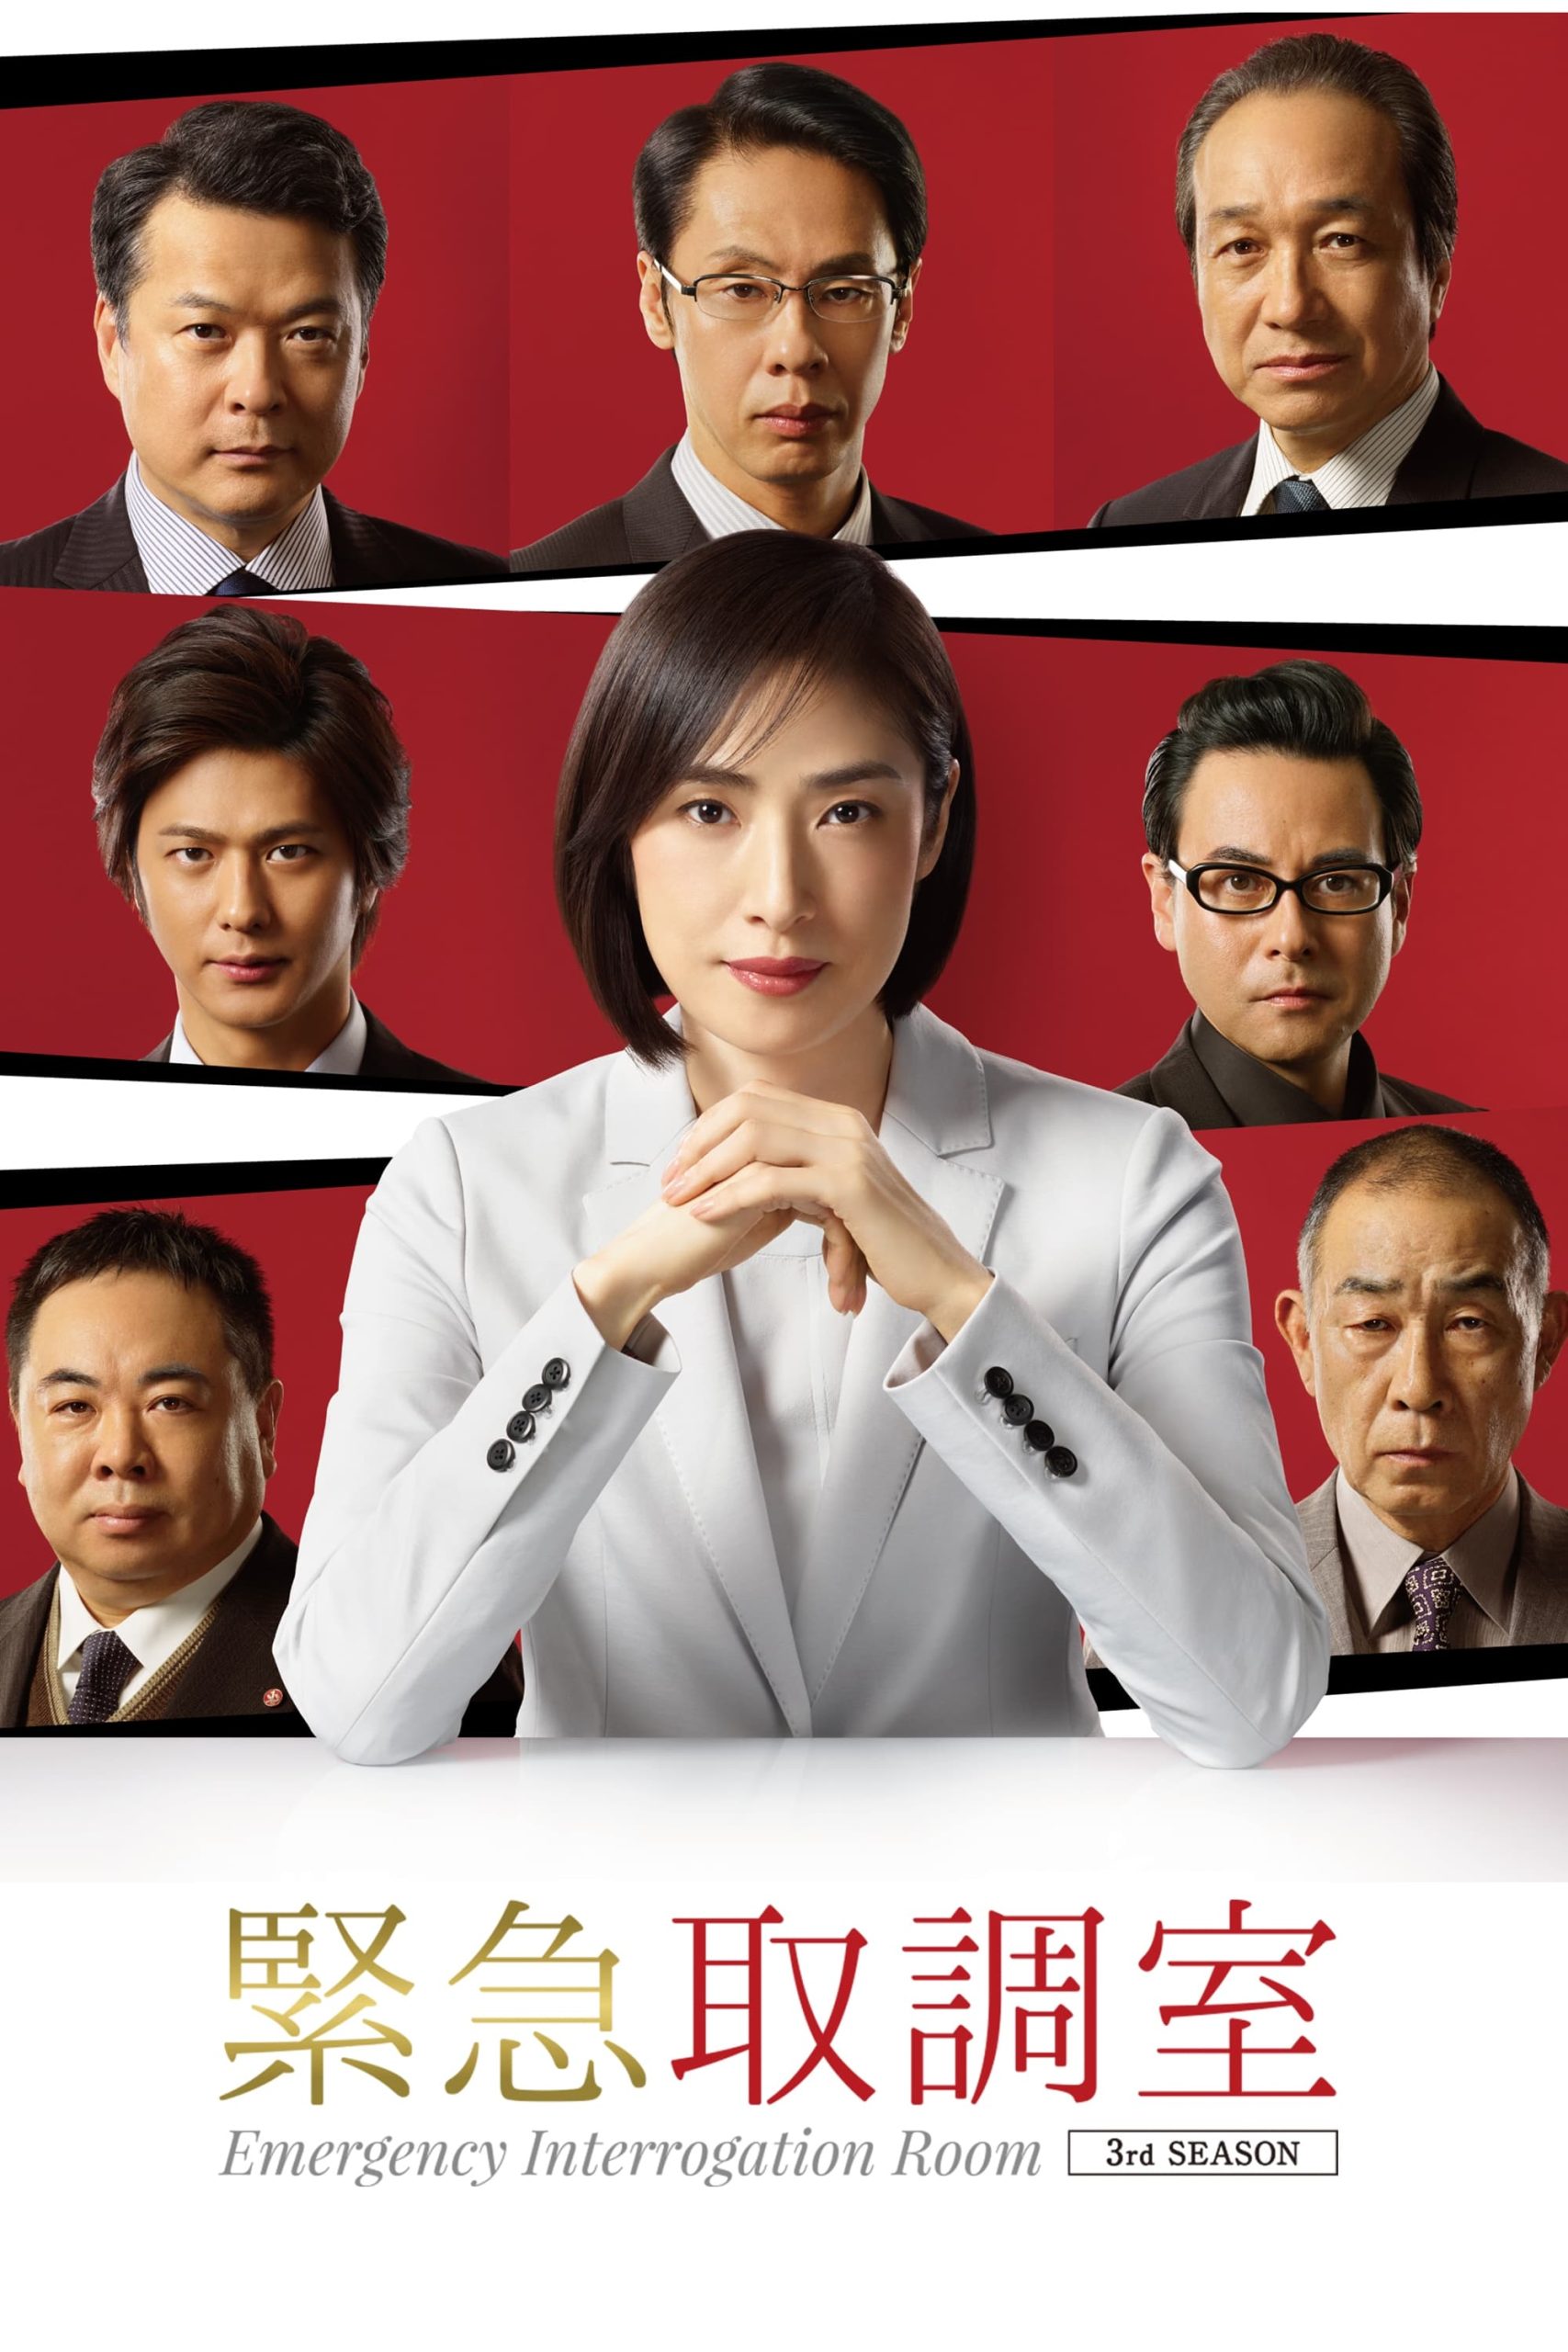 ดูหนังออนไลน์ฟรี ซีรี่ส์ญี่ปุ่น Emergency Interrogation Room ห้องสอบสวนด่วนพิเศษ | ซับไทย